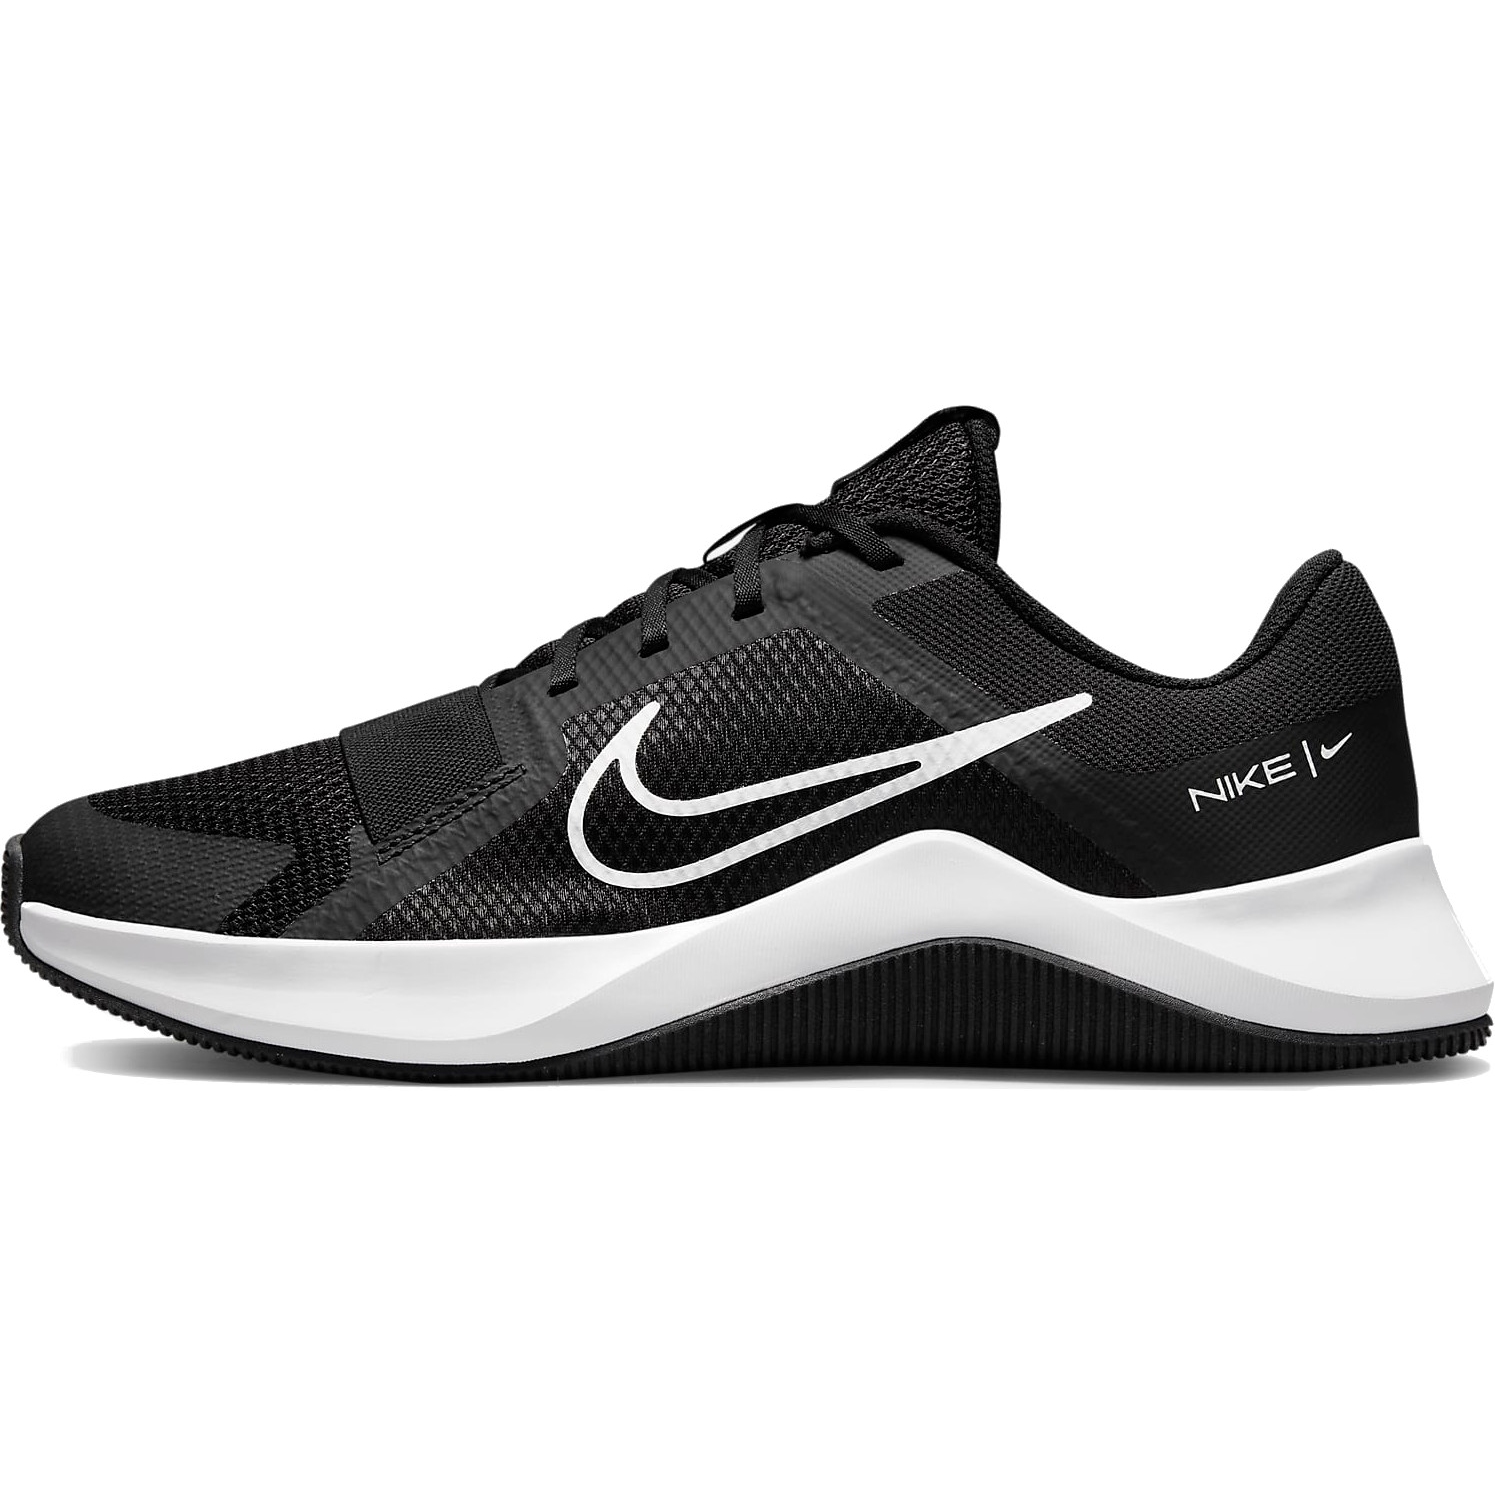 Productfoto van Nike MC Trainer 2 Schoenen Heren - zwart/wit-zwart DM0823-003